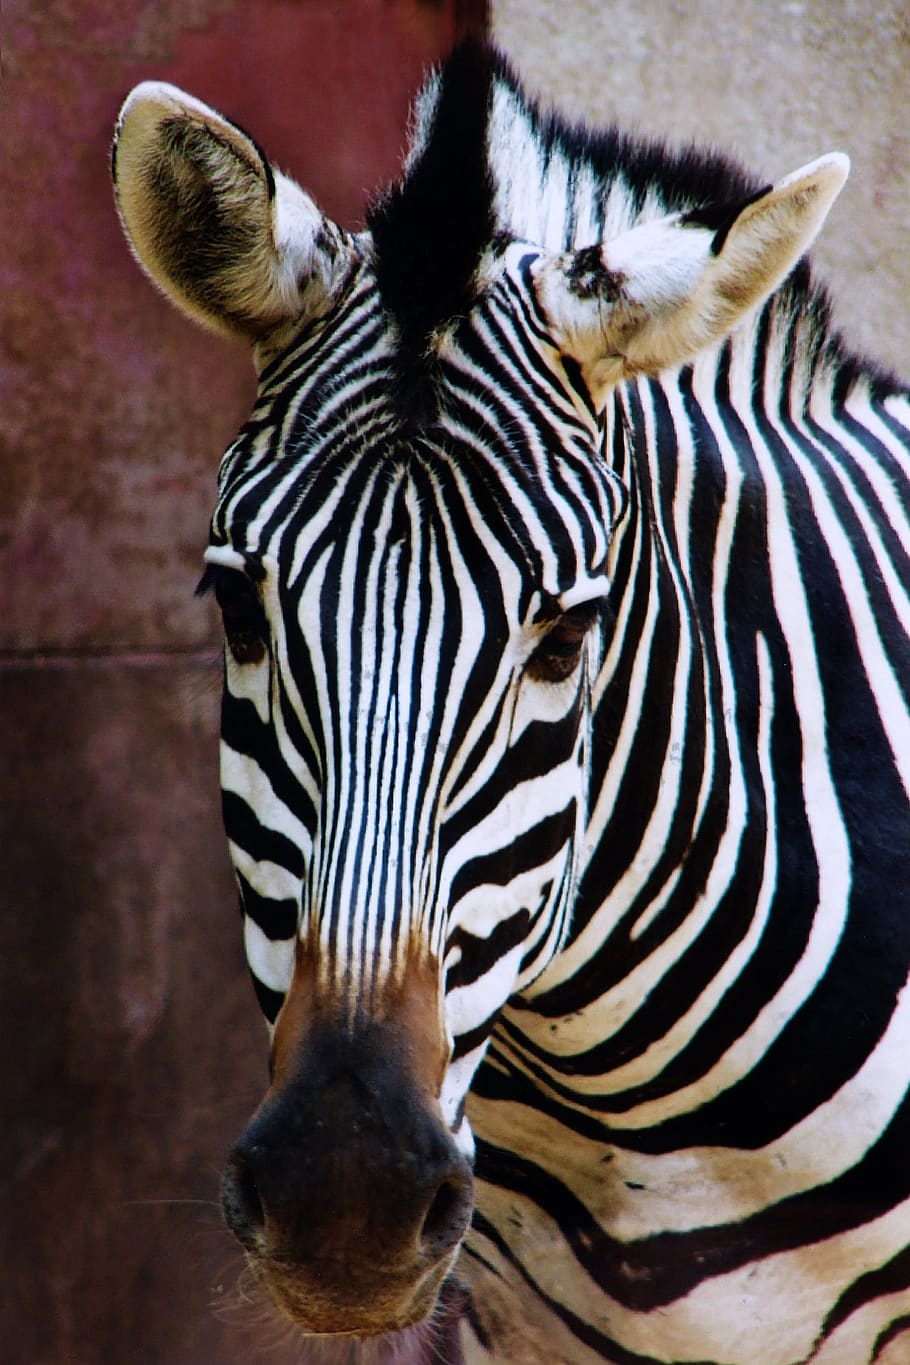 Zebra, Hewan, Kebun Binatang, Alam, Bergaris-garis, hewan liar, afrika, satwa liar, satu hewan, hewan di alam liar